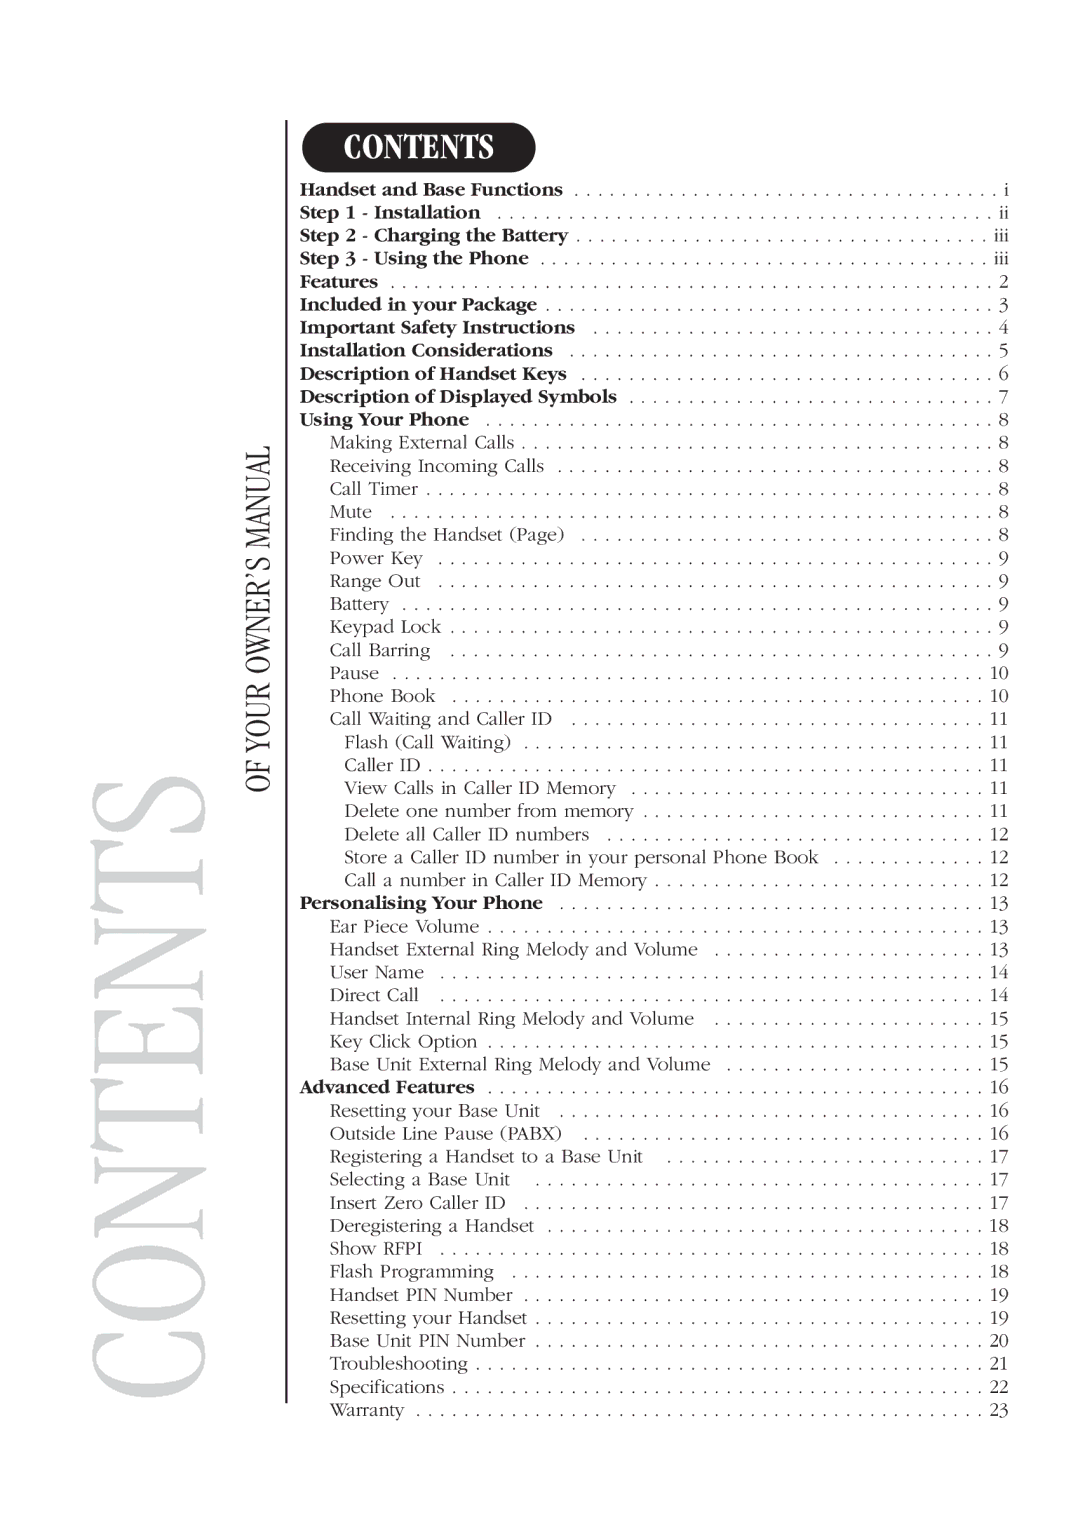 Uniden DECT 1811 manual Contents 